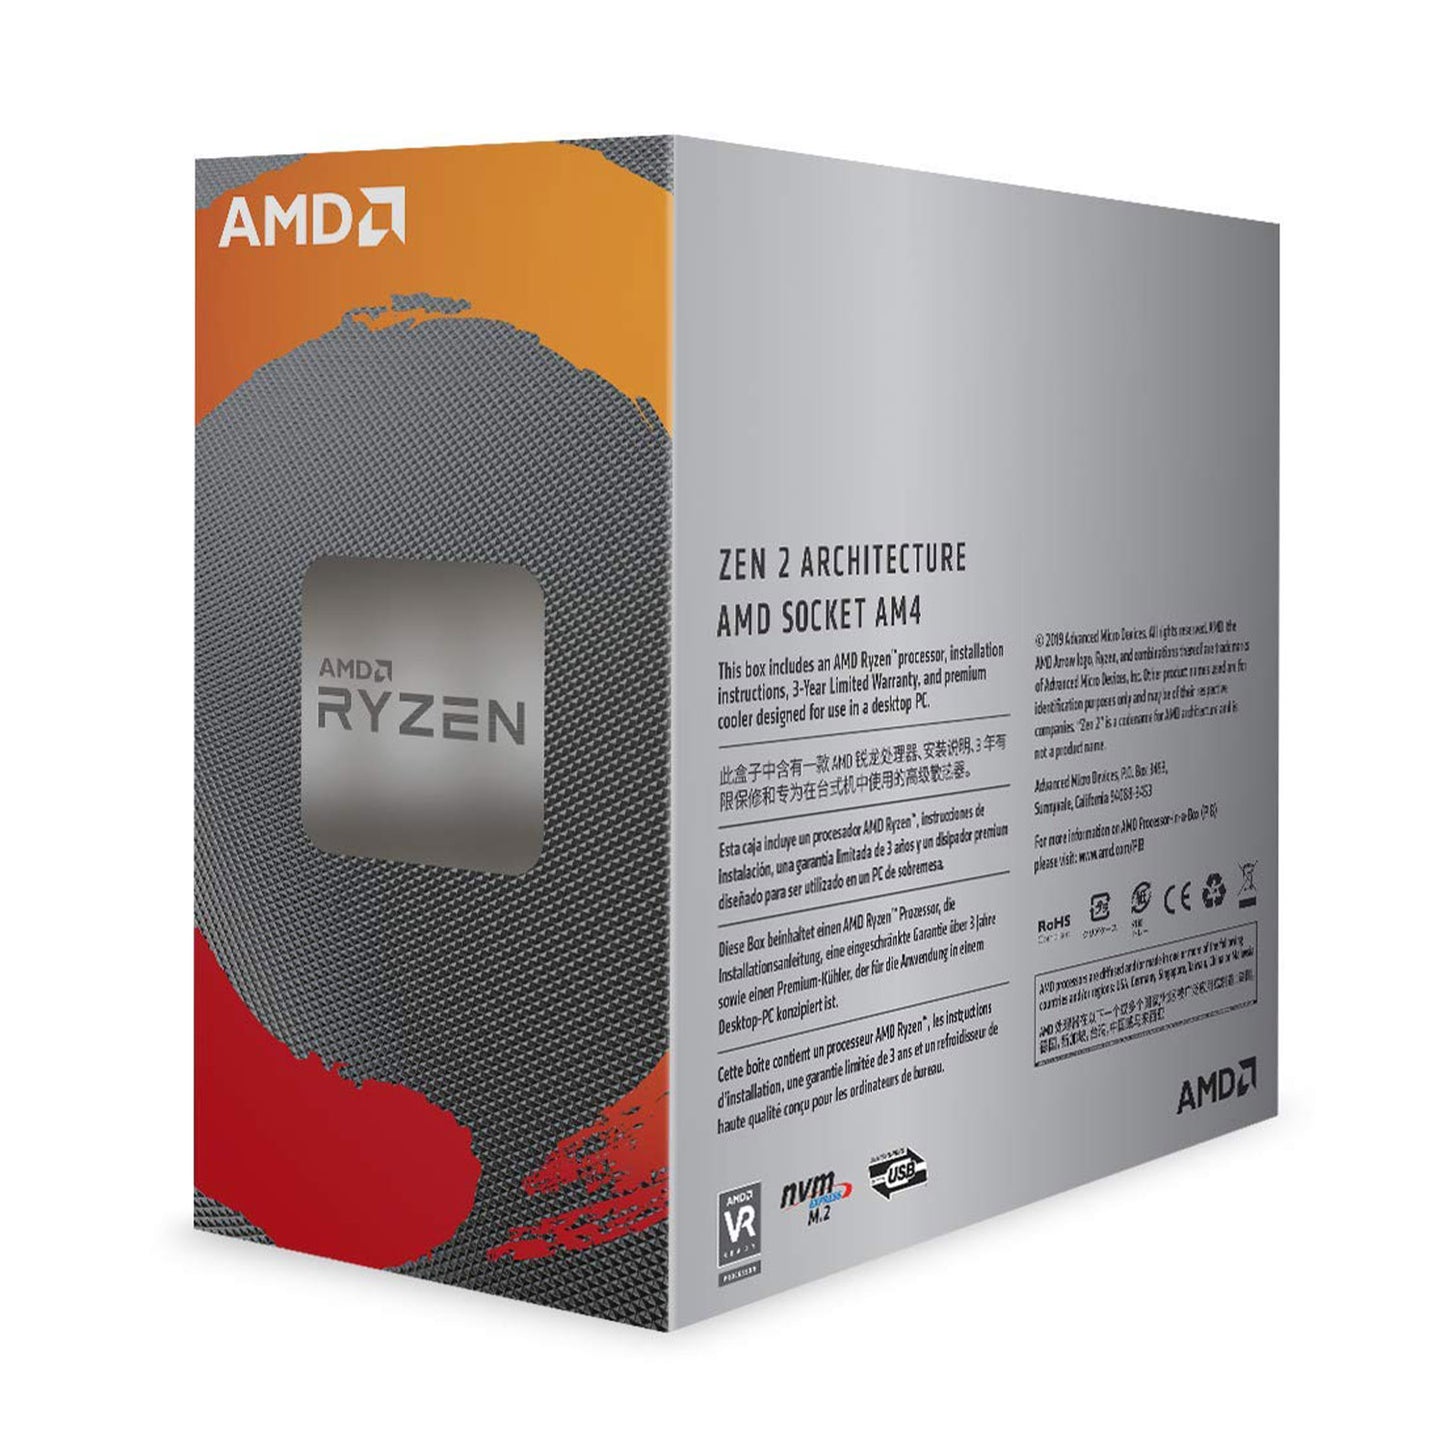 [रीपैक्ड] AMD Ryzen 5 3500 डेस्कटॉप प्रोसेसर 6 कोर 4.1GHz तक 19MB कैश AM4 सॉकेट